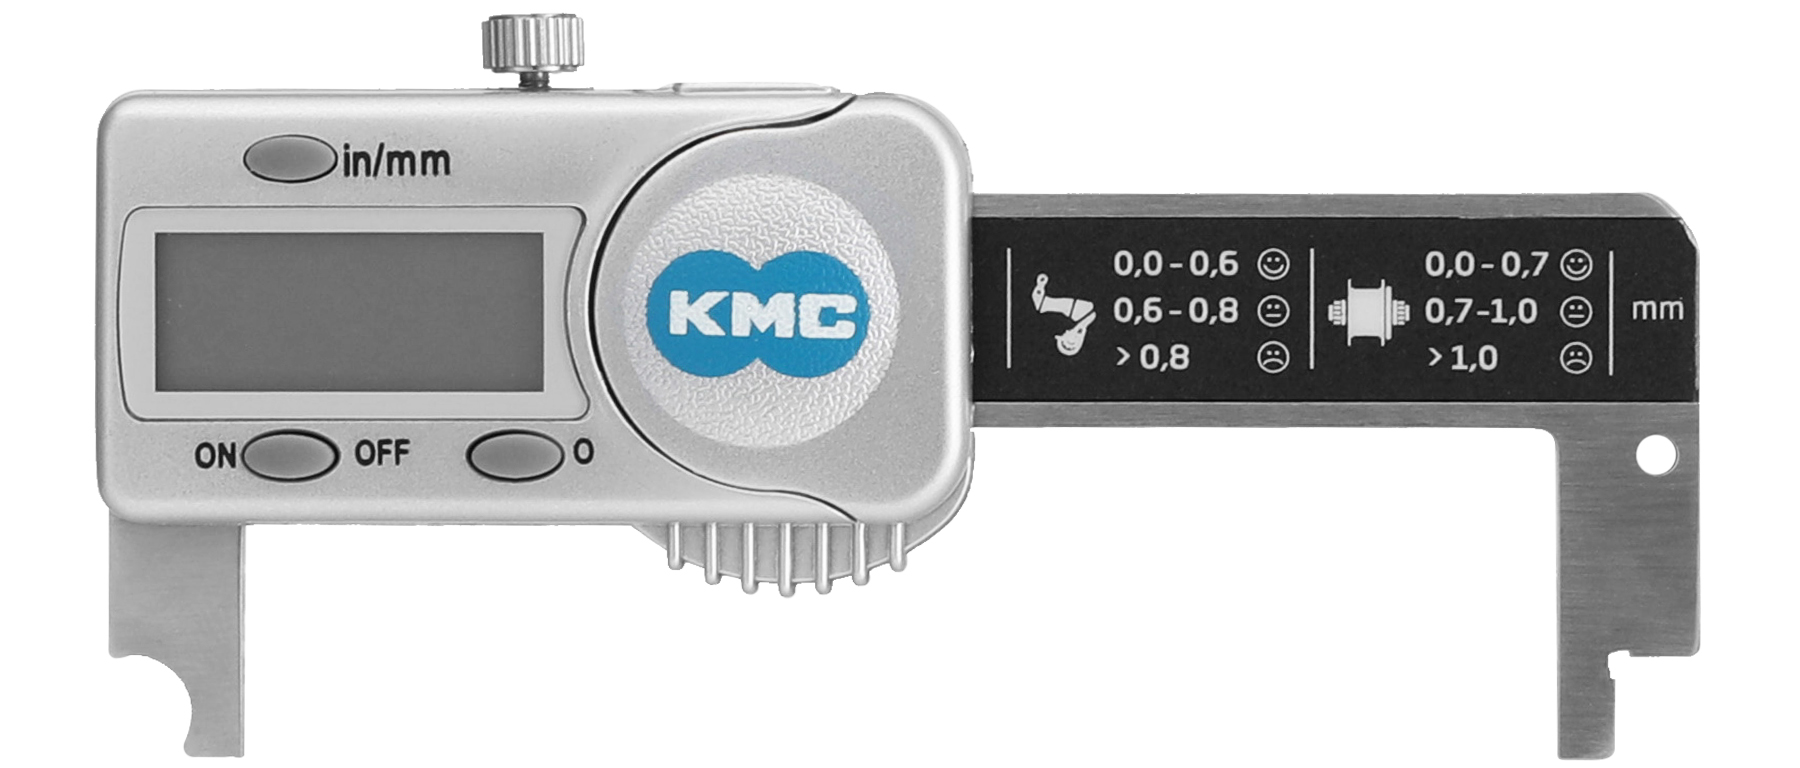 KMC Digital Chain Checker